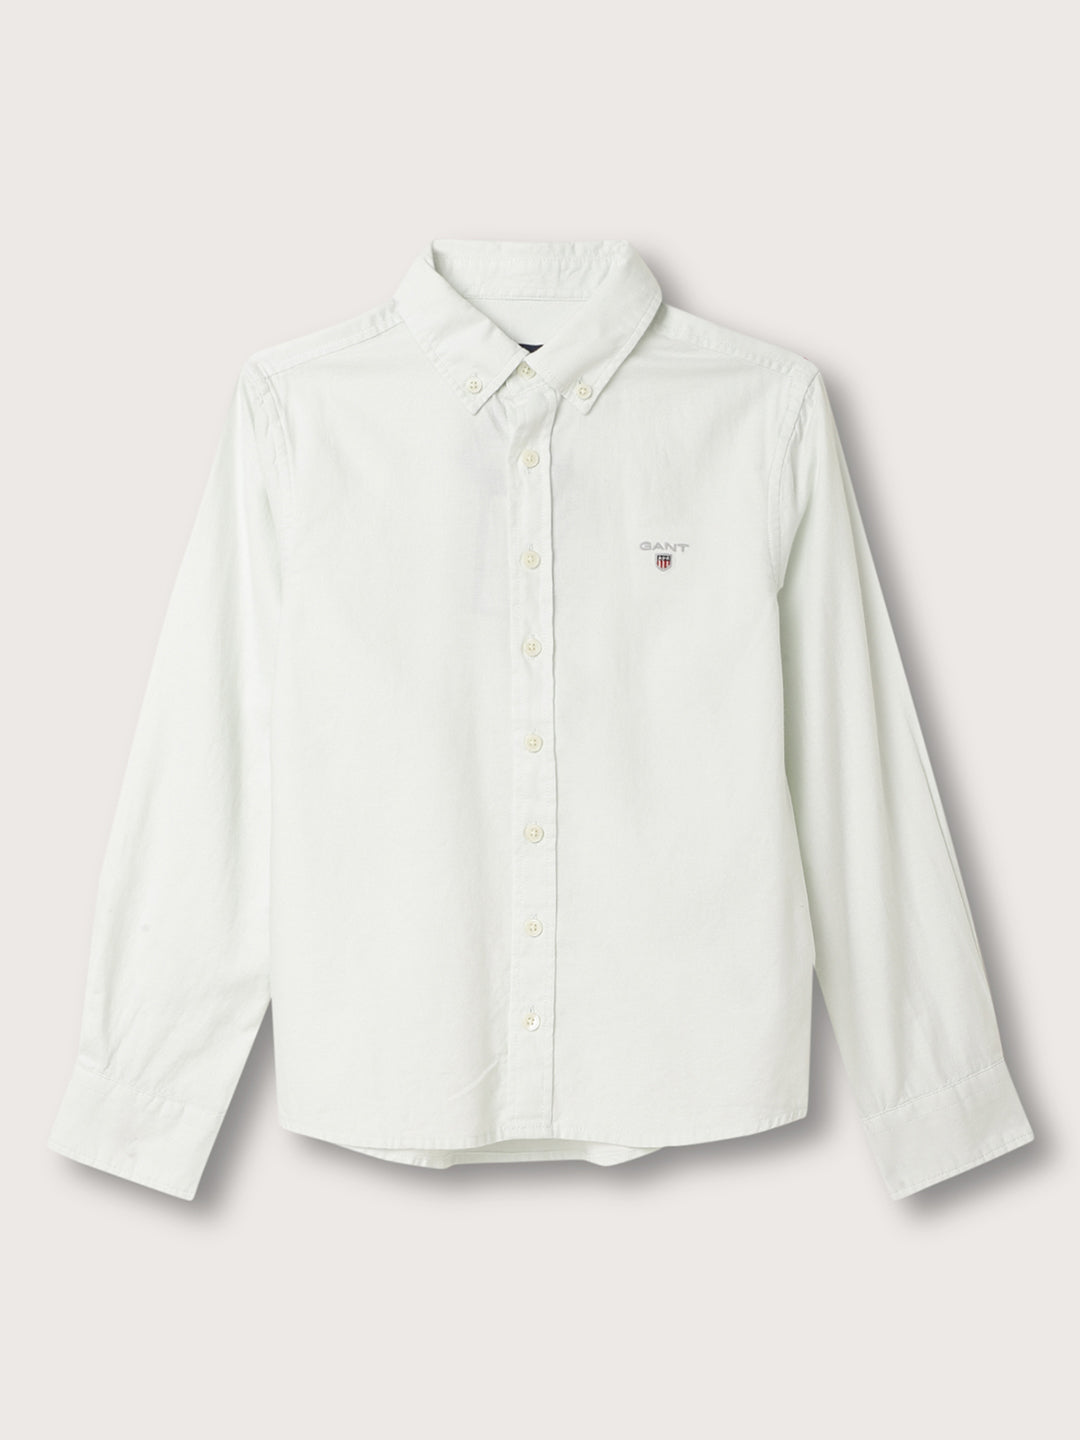 Gant Boys Button Down Collar Cotton Casual Shirt